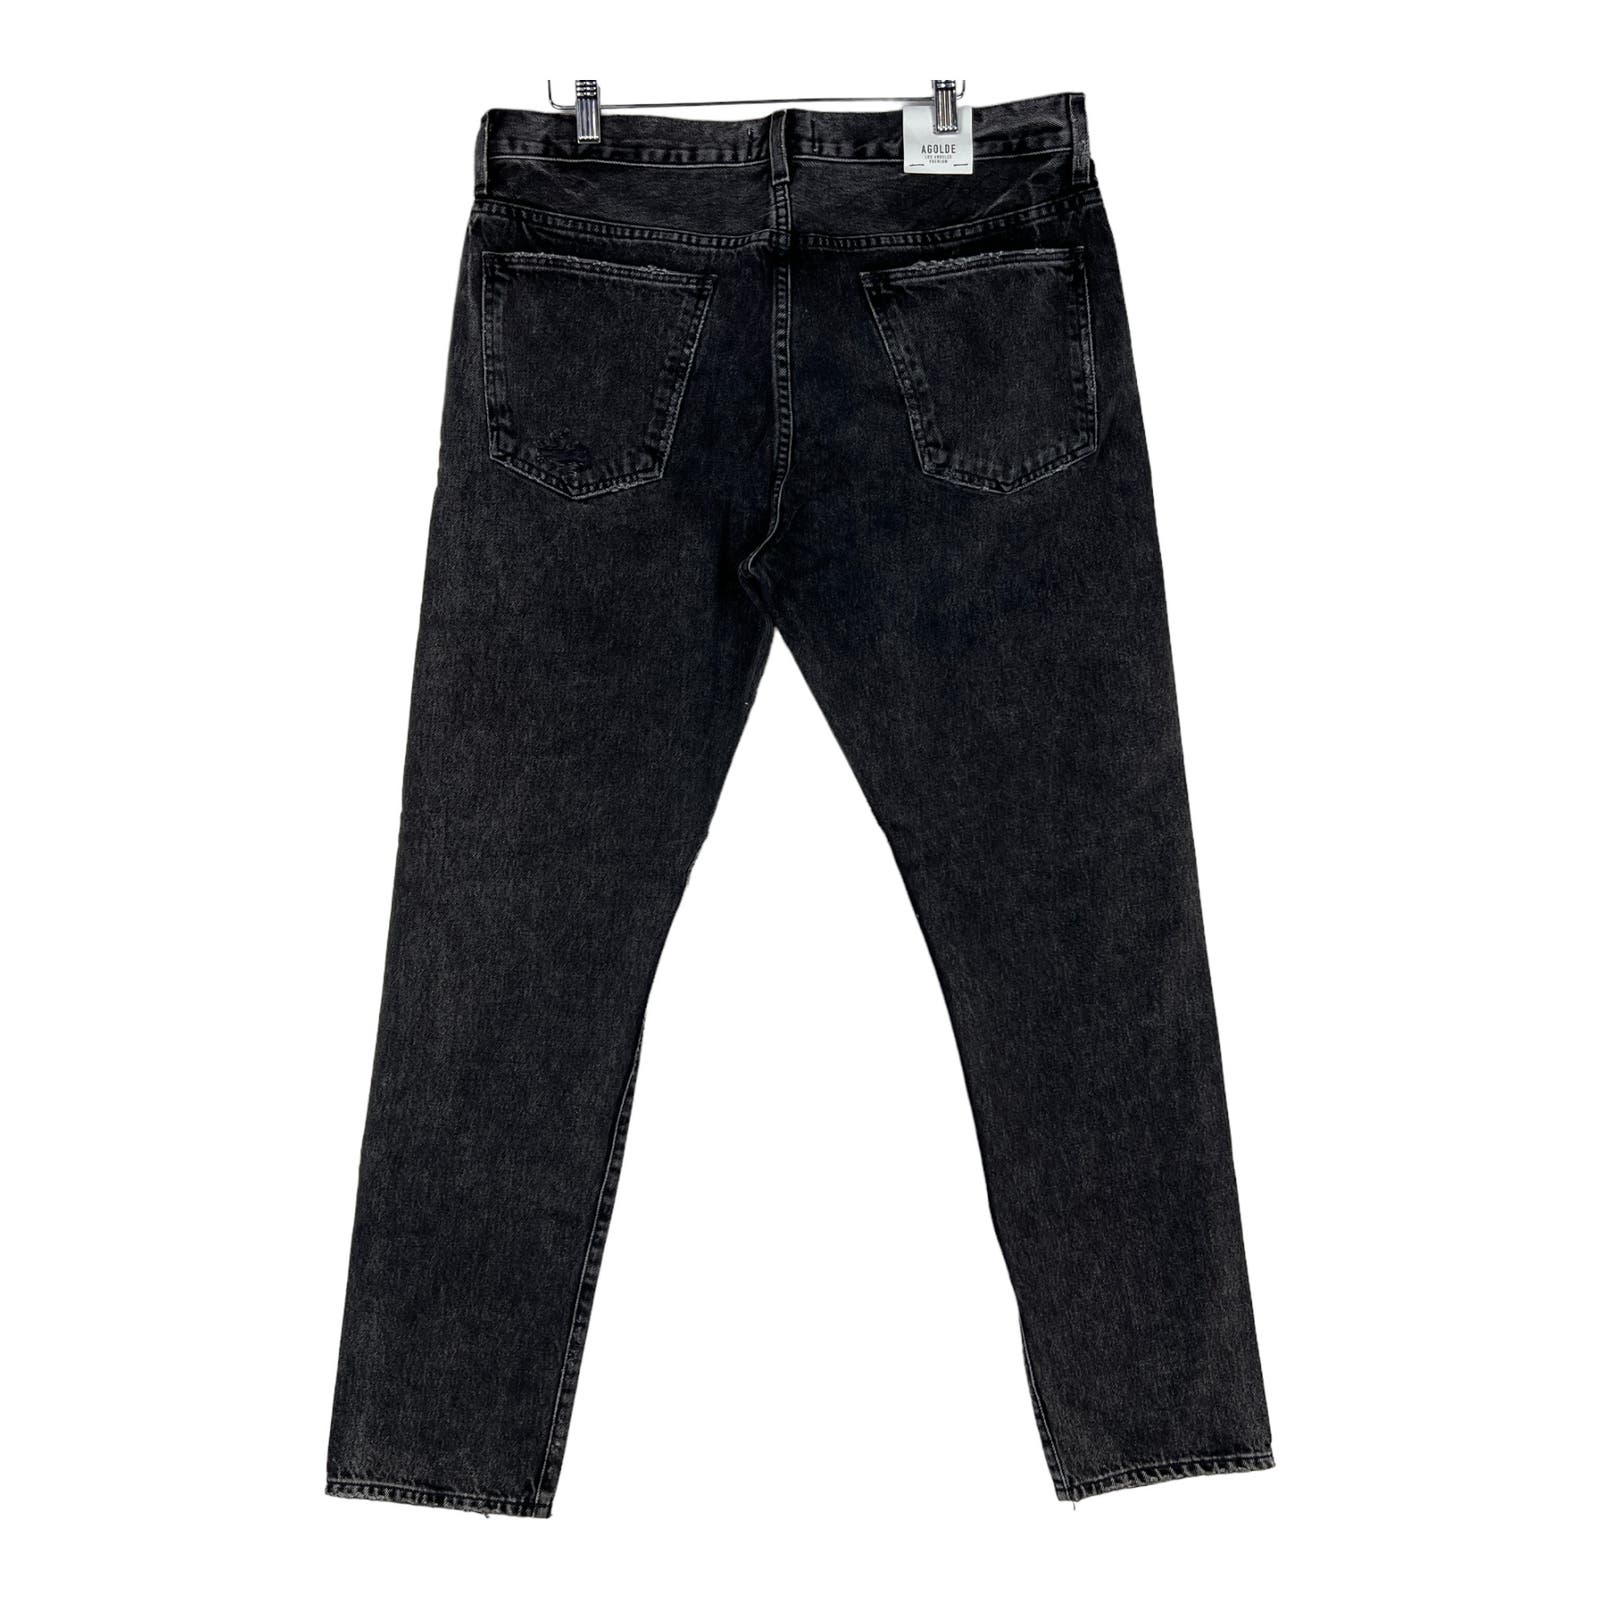 Agolde Men Jeans US 34 Slim Fit Denim Washed Cotton